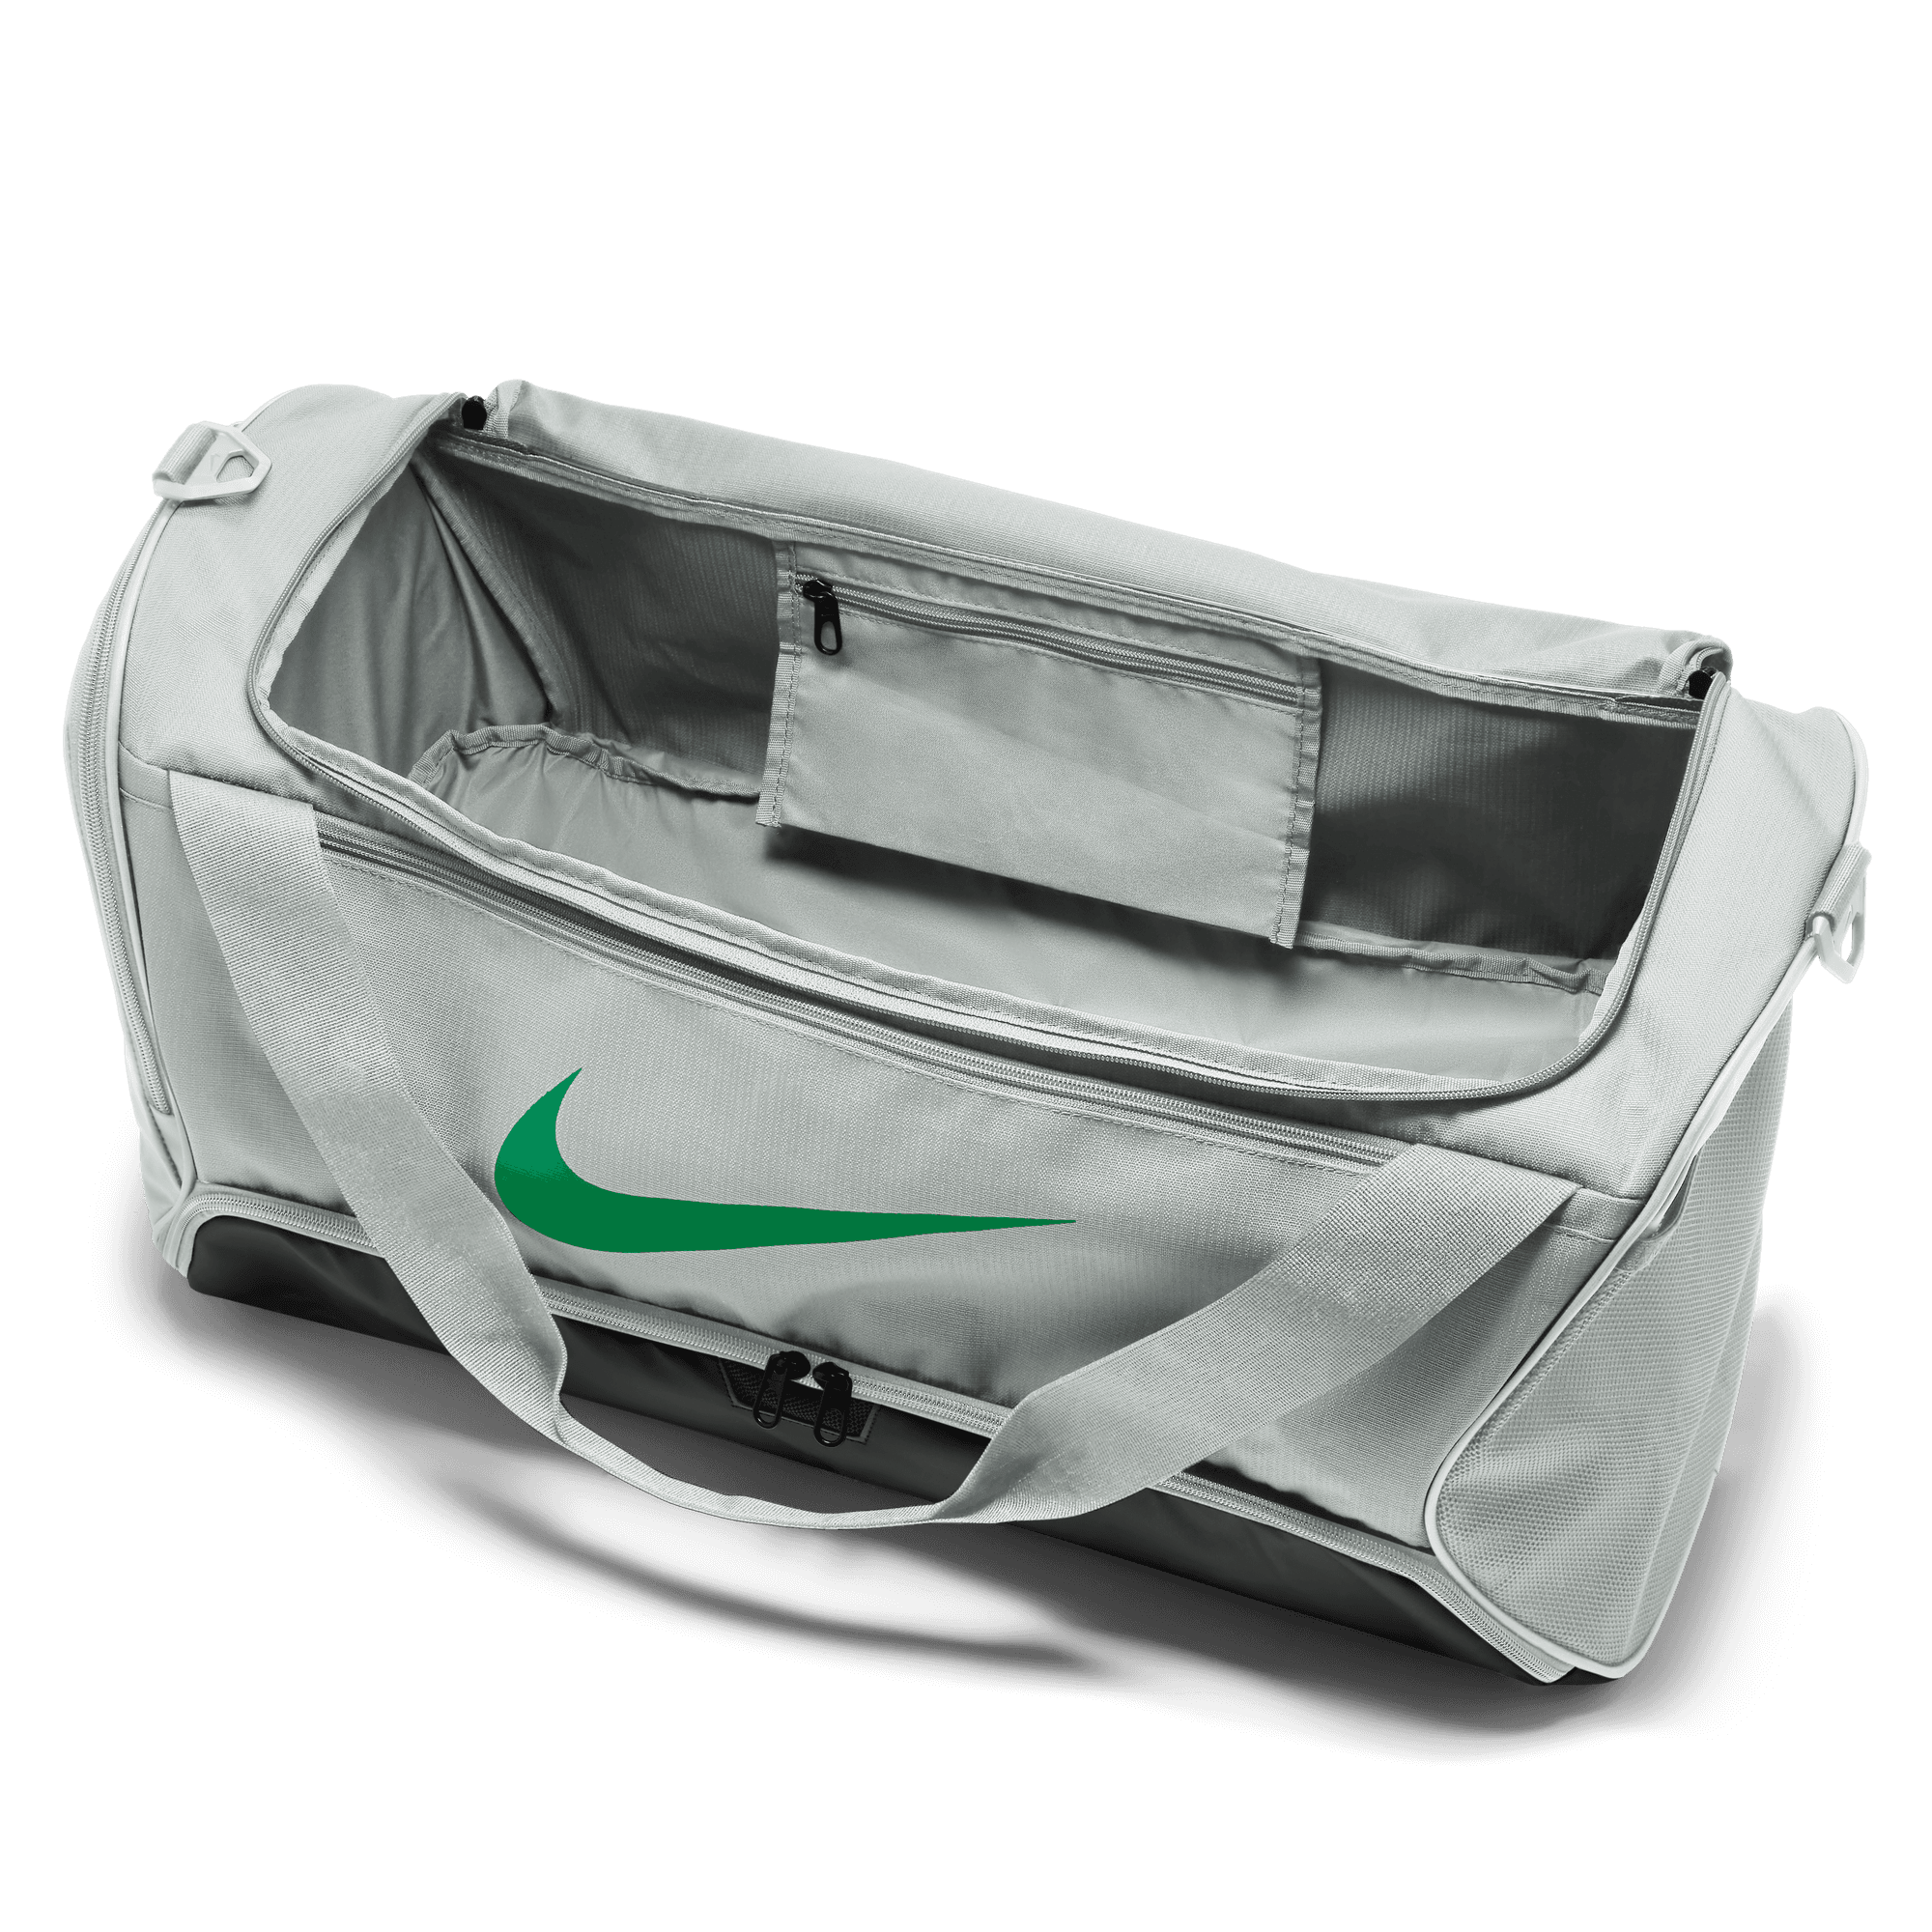 Nike / Brasilia 9.5 Training Duffel Bag (Medium)